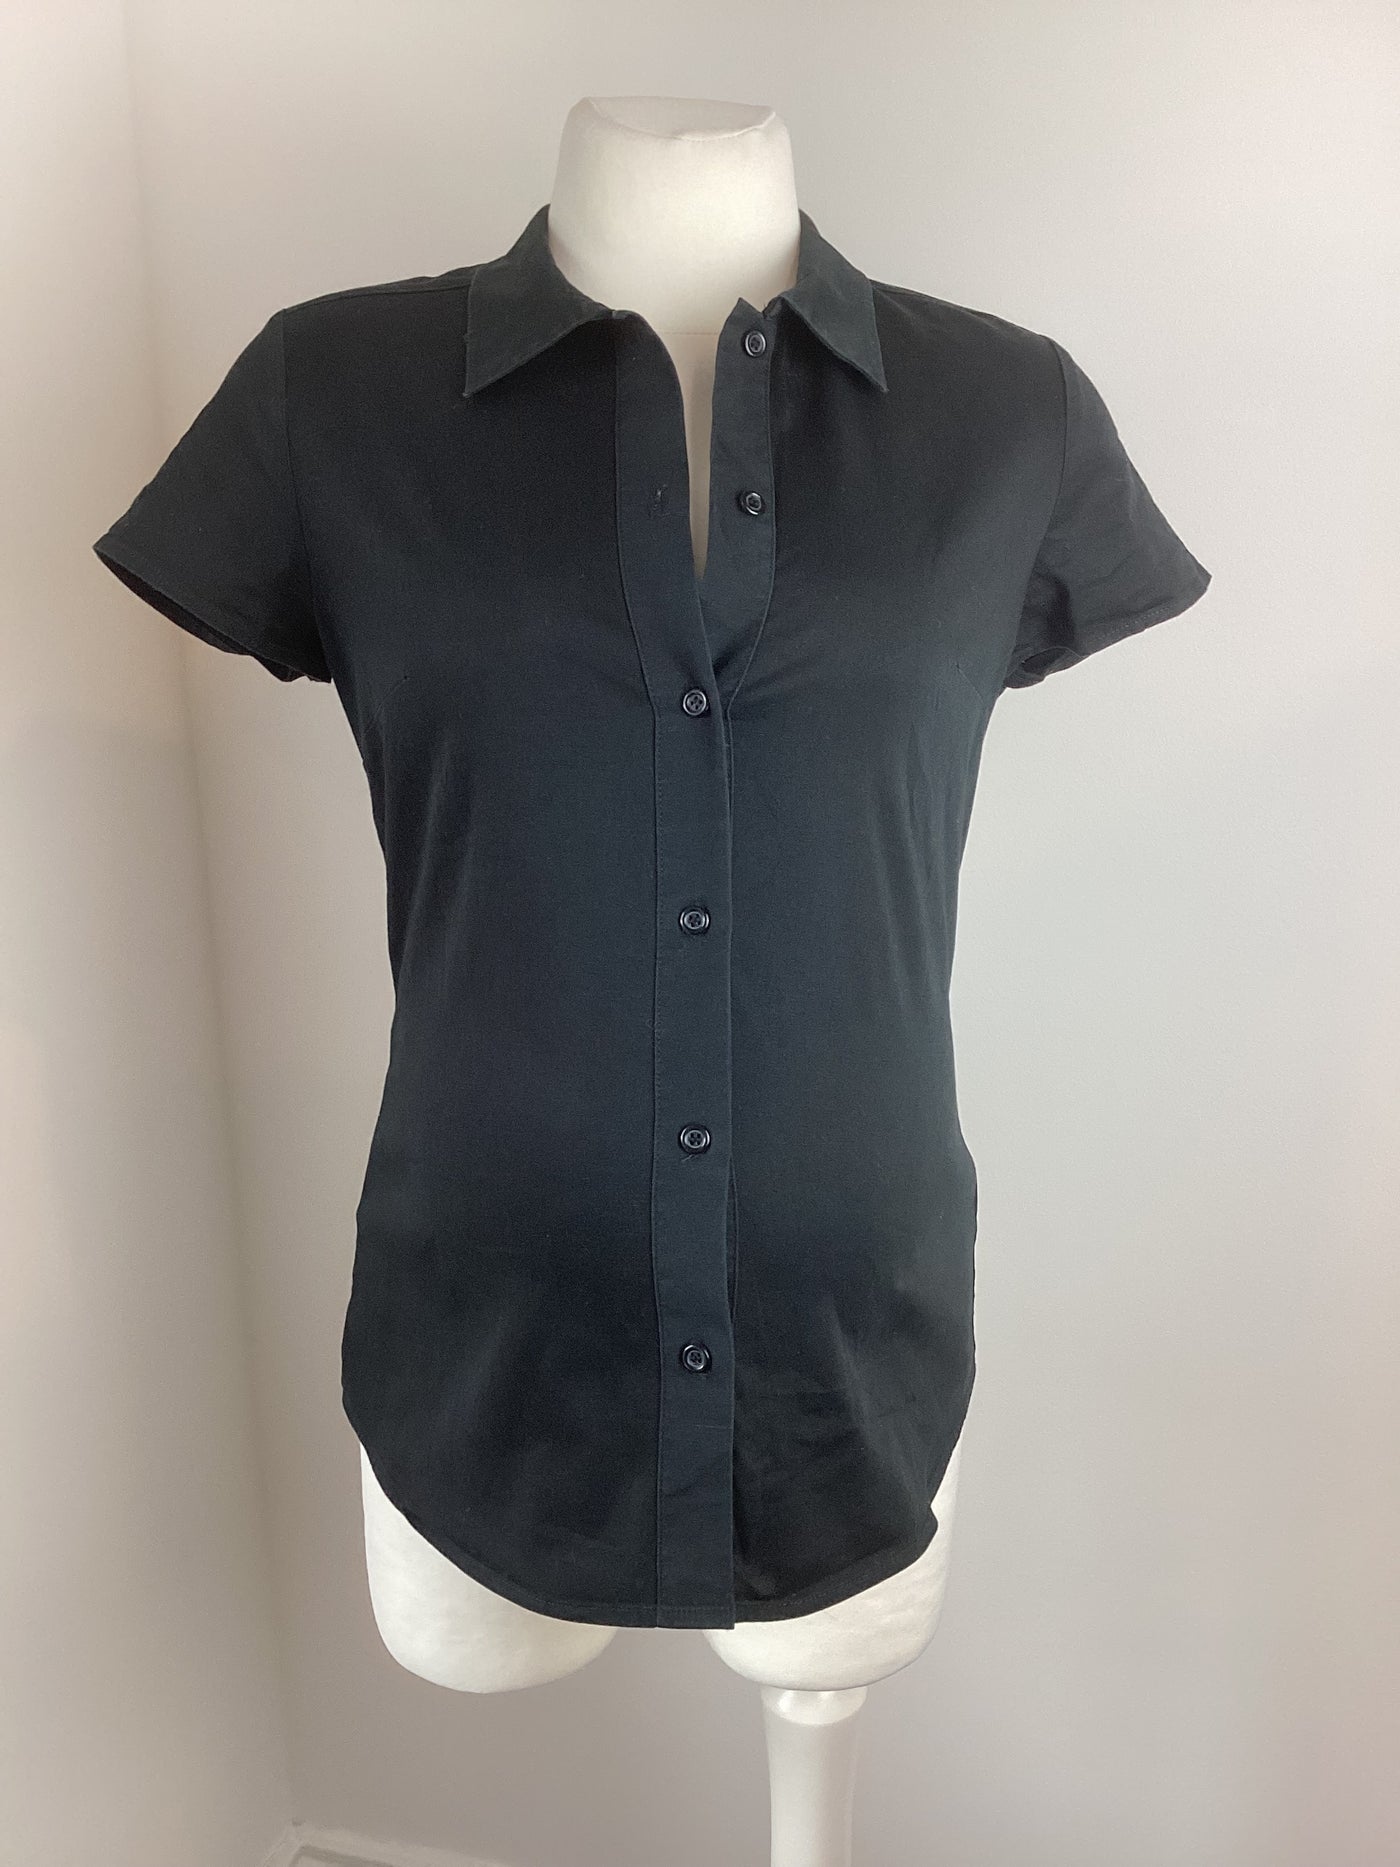 Formes Paris black short sleeved shirt - Size EUR 38 (Approx UK 10)